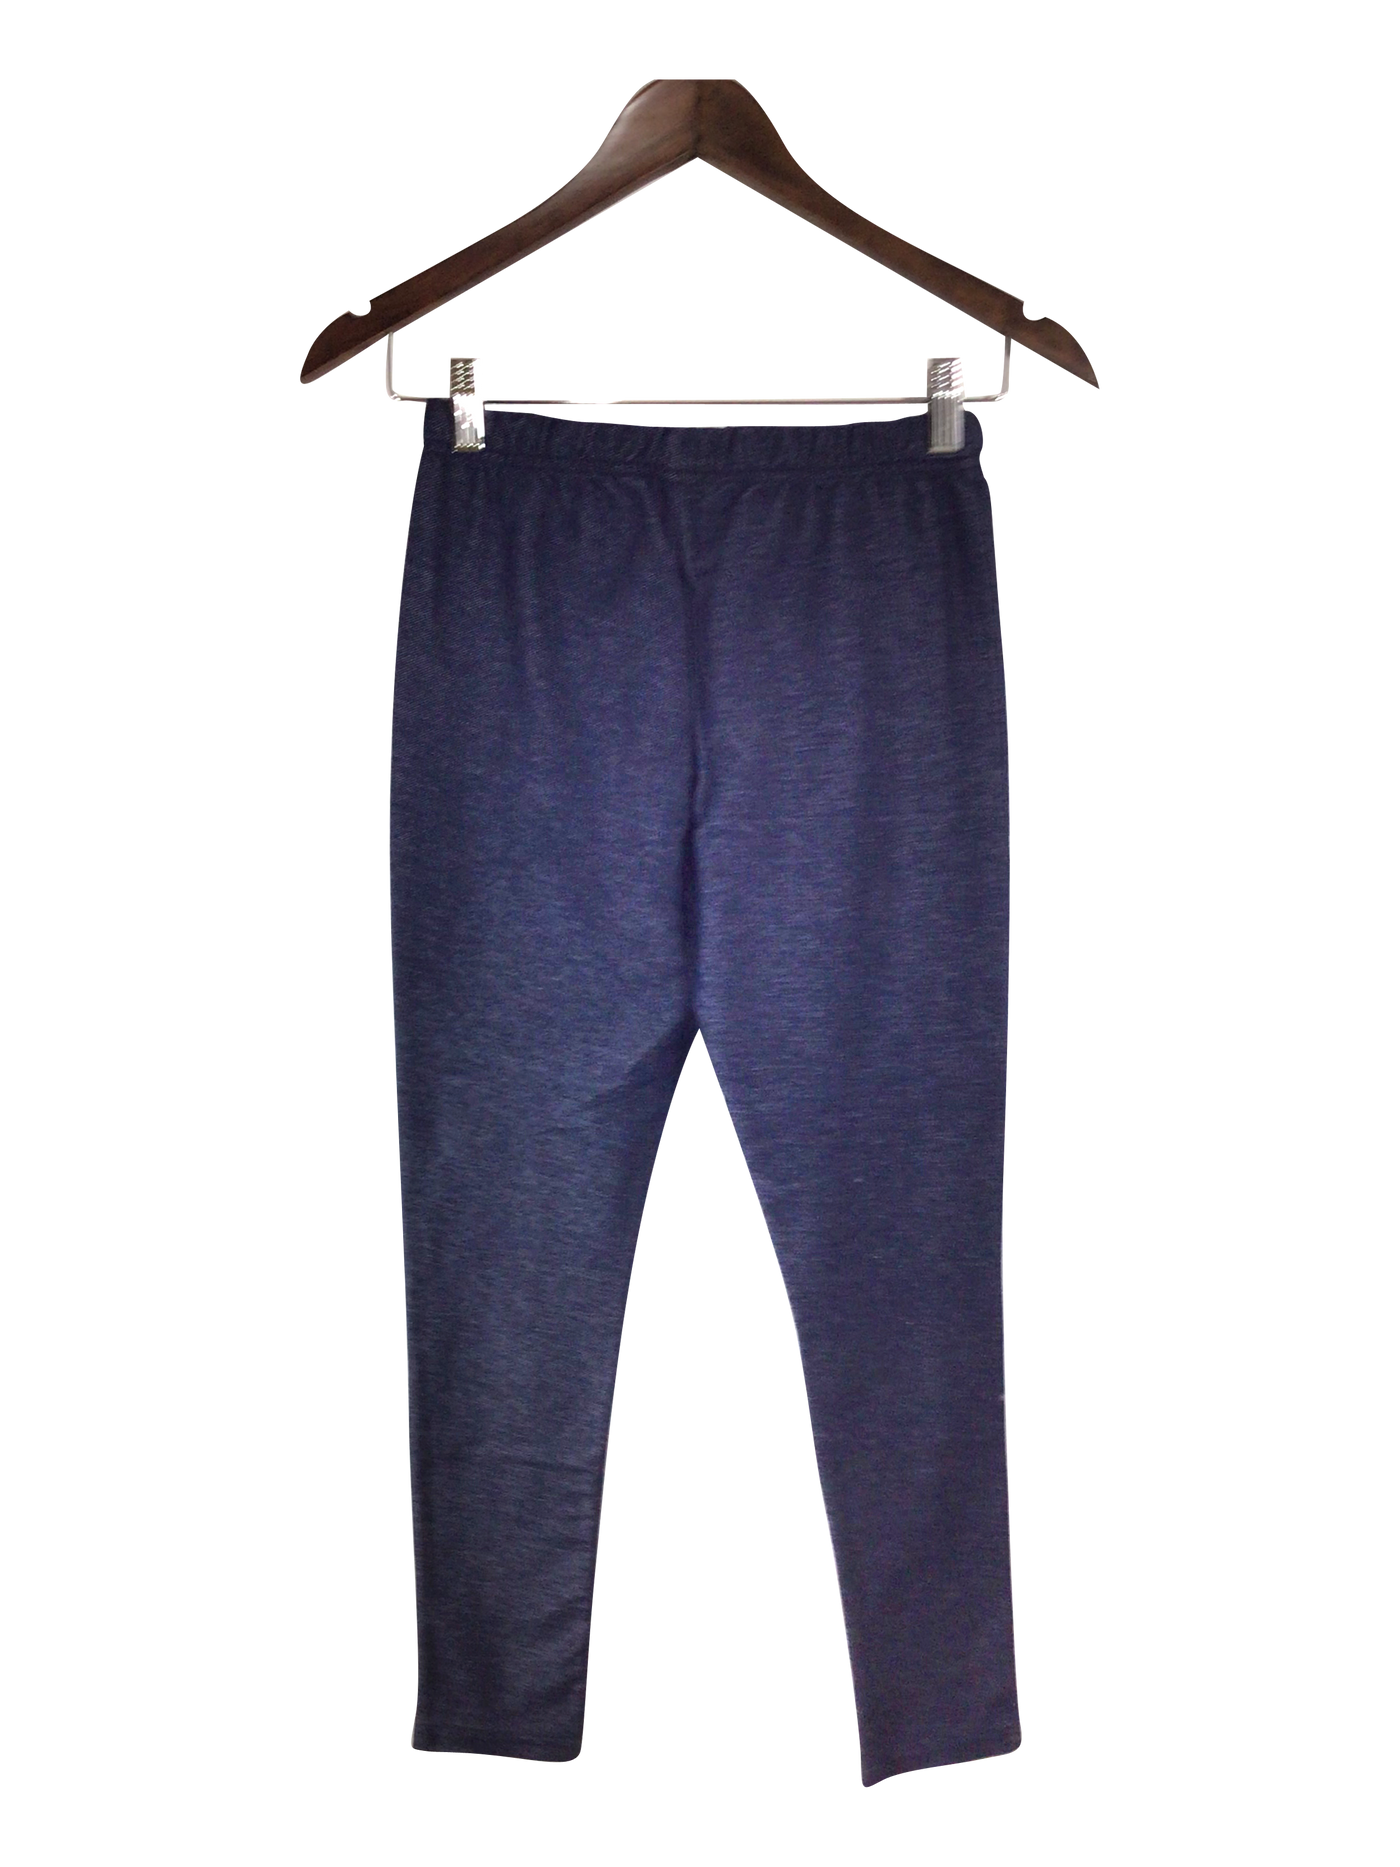 CARTER'S Pant Regular fit in Blue - Size 14 | 6.99 $ KOOP